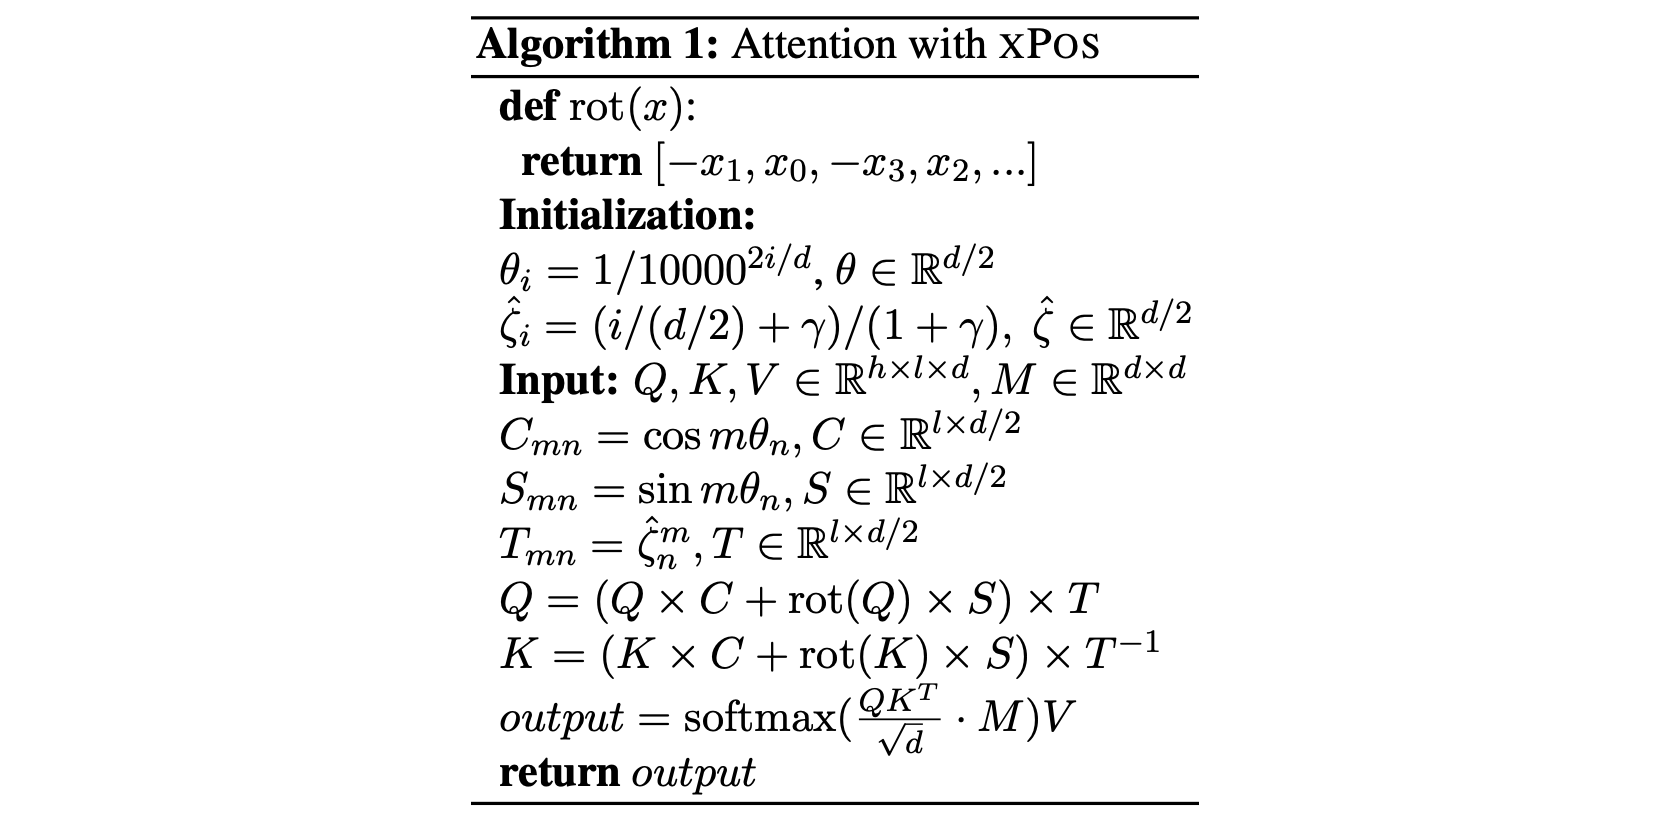 Несмотря на отличия в нотации, несложно узнать в описанном алгоритме RoPE с дополнительными множителями в формулах запросов и ключей. M — маска внимания.